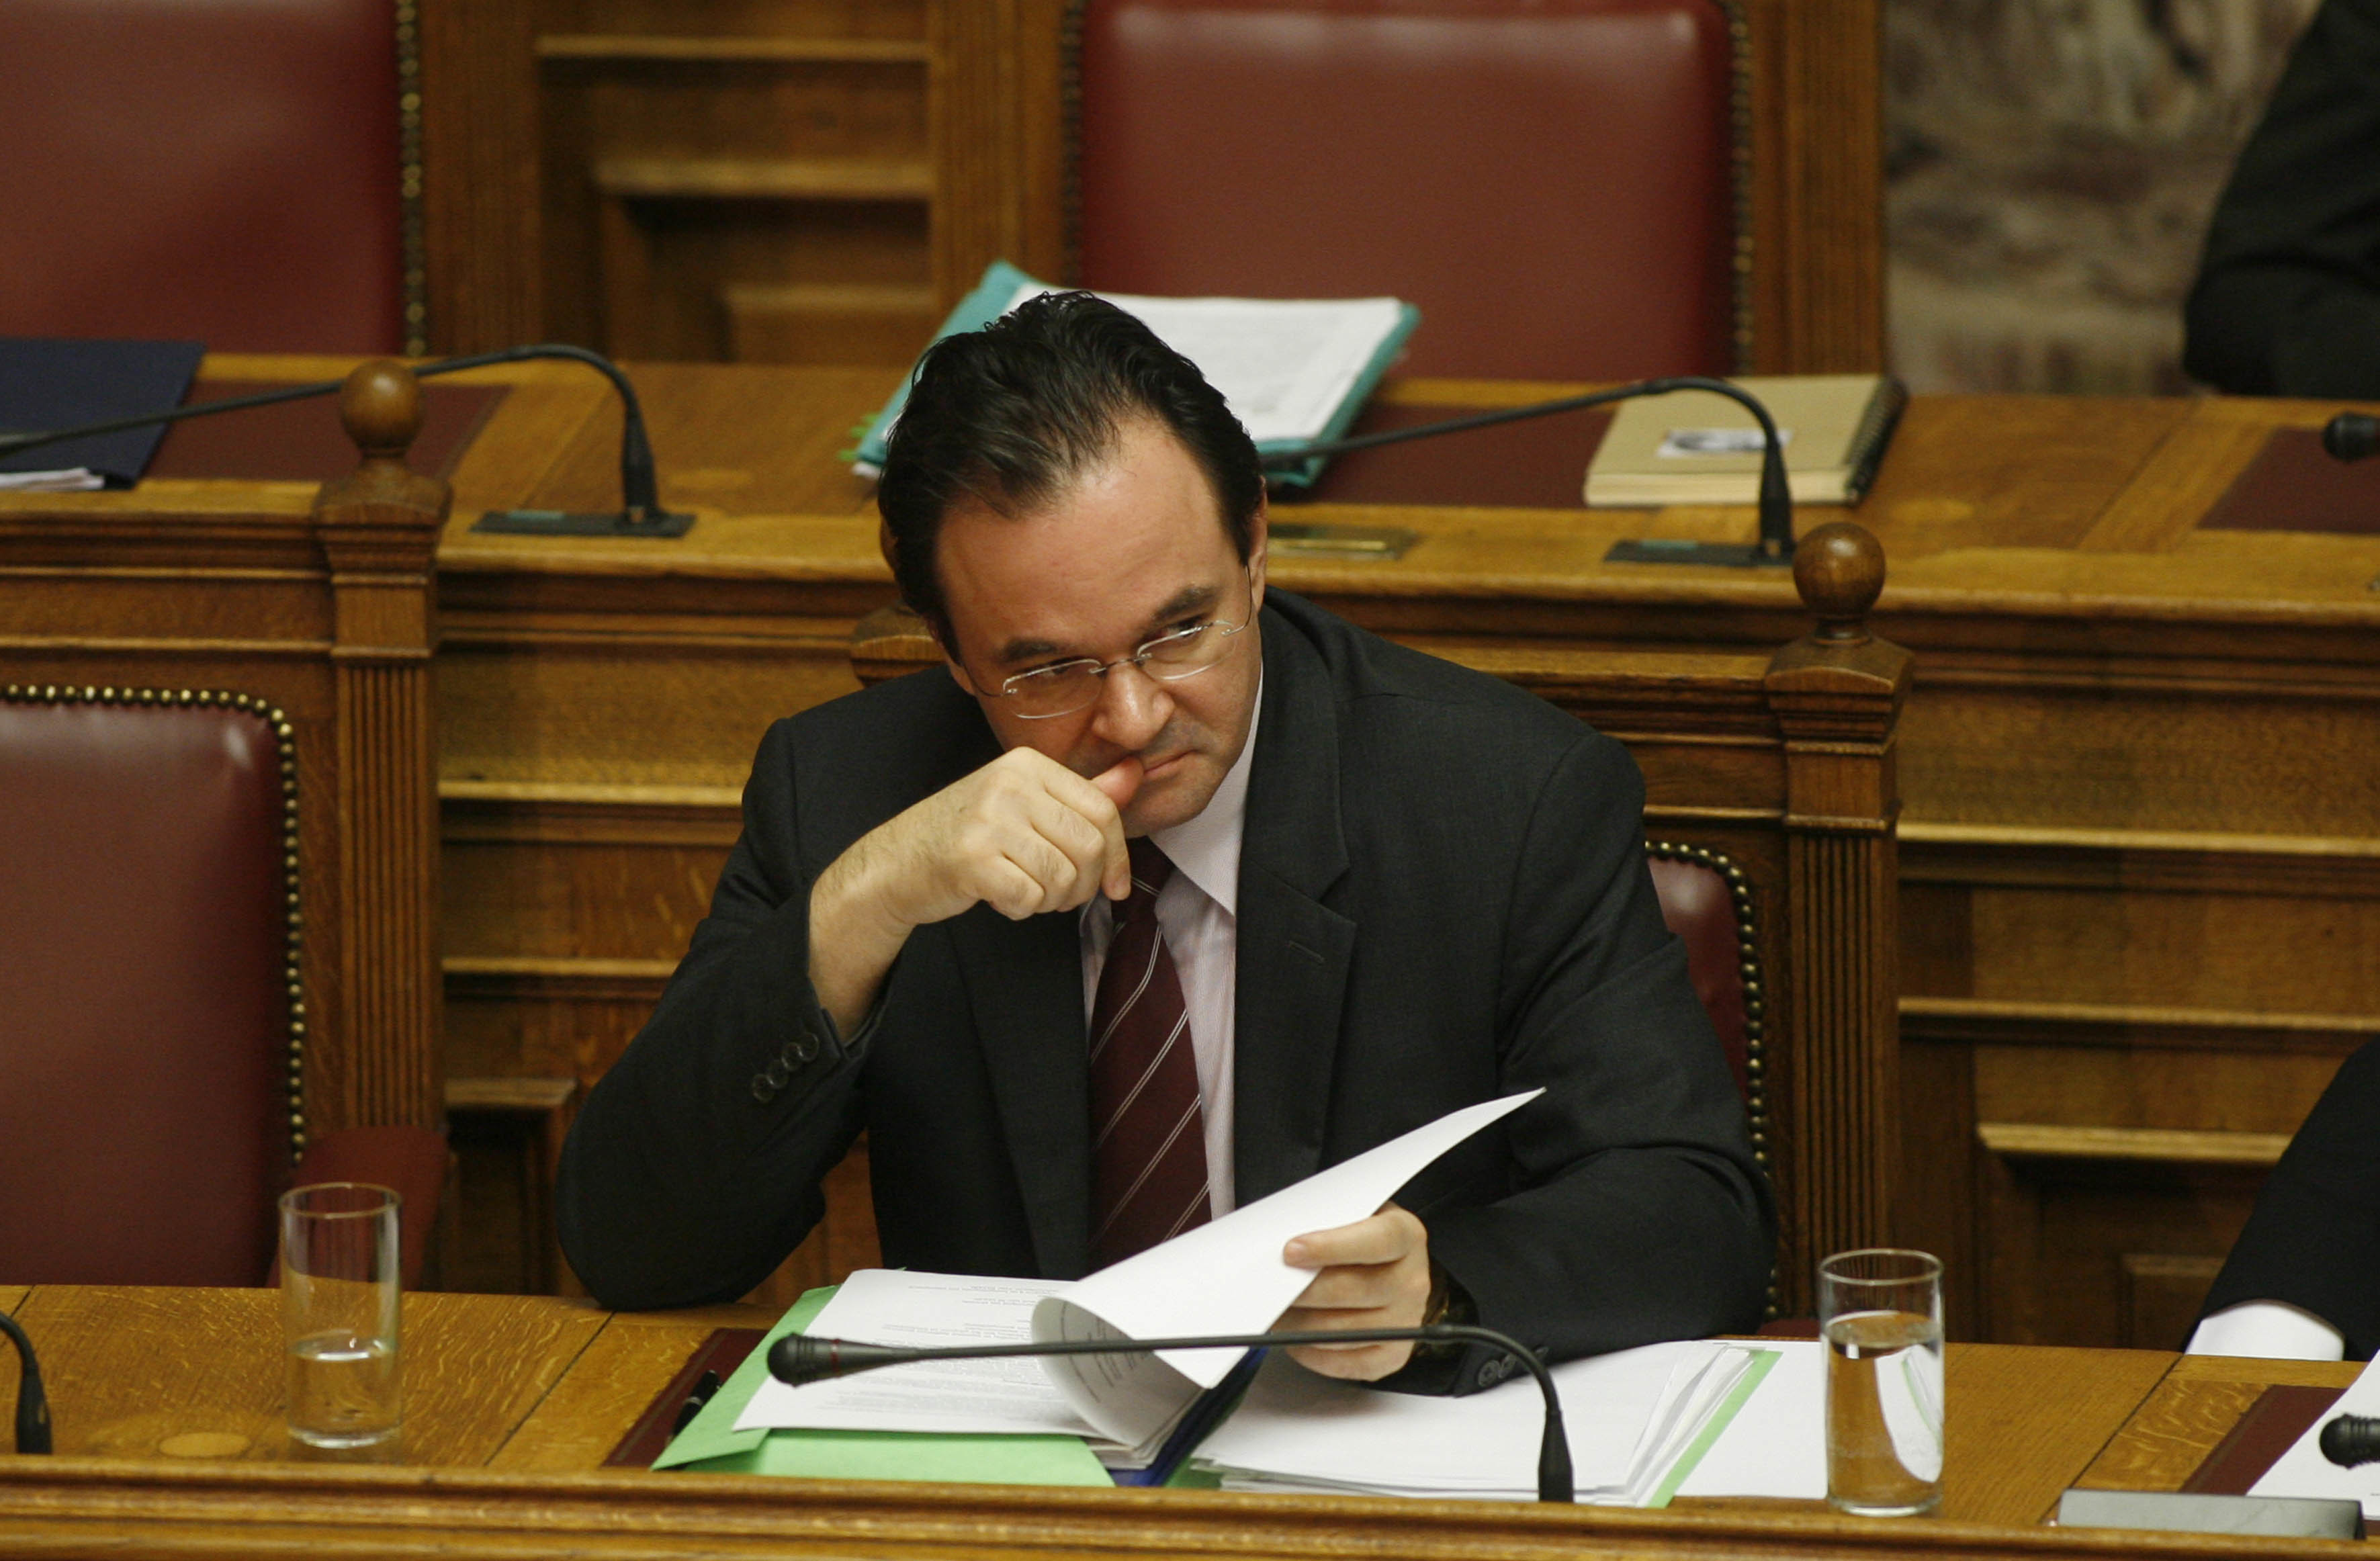 Ο υπουργός Οικονομικών Γ.Παπακωνσταντίνου ενώ...τρώει τα νύχια του. Άλλωστε το άγχος και το στρες για την οικονομία είναι μεγάλο. ΦΩΤΟ EUROKINISSI